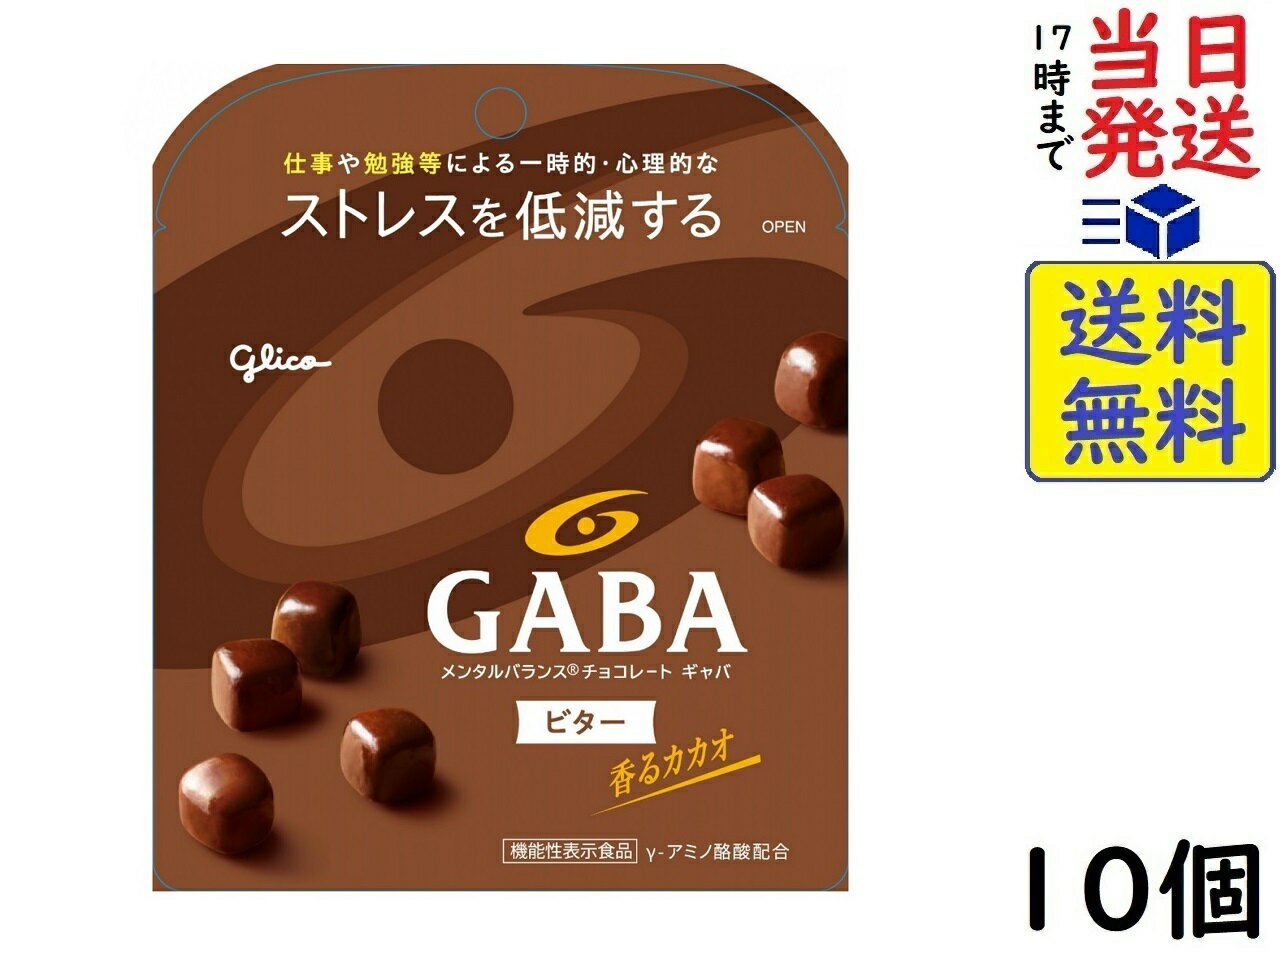 江崎グリコチョコレート 江崎グリコ GABA ギャバ(ビターチョコレート) スタンドパウチ 51g ×10個(機能性表示食品)賞味期限2025/02